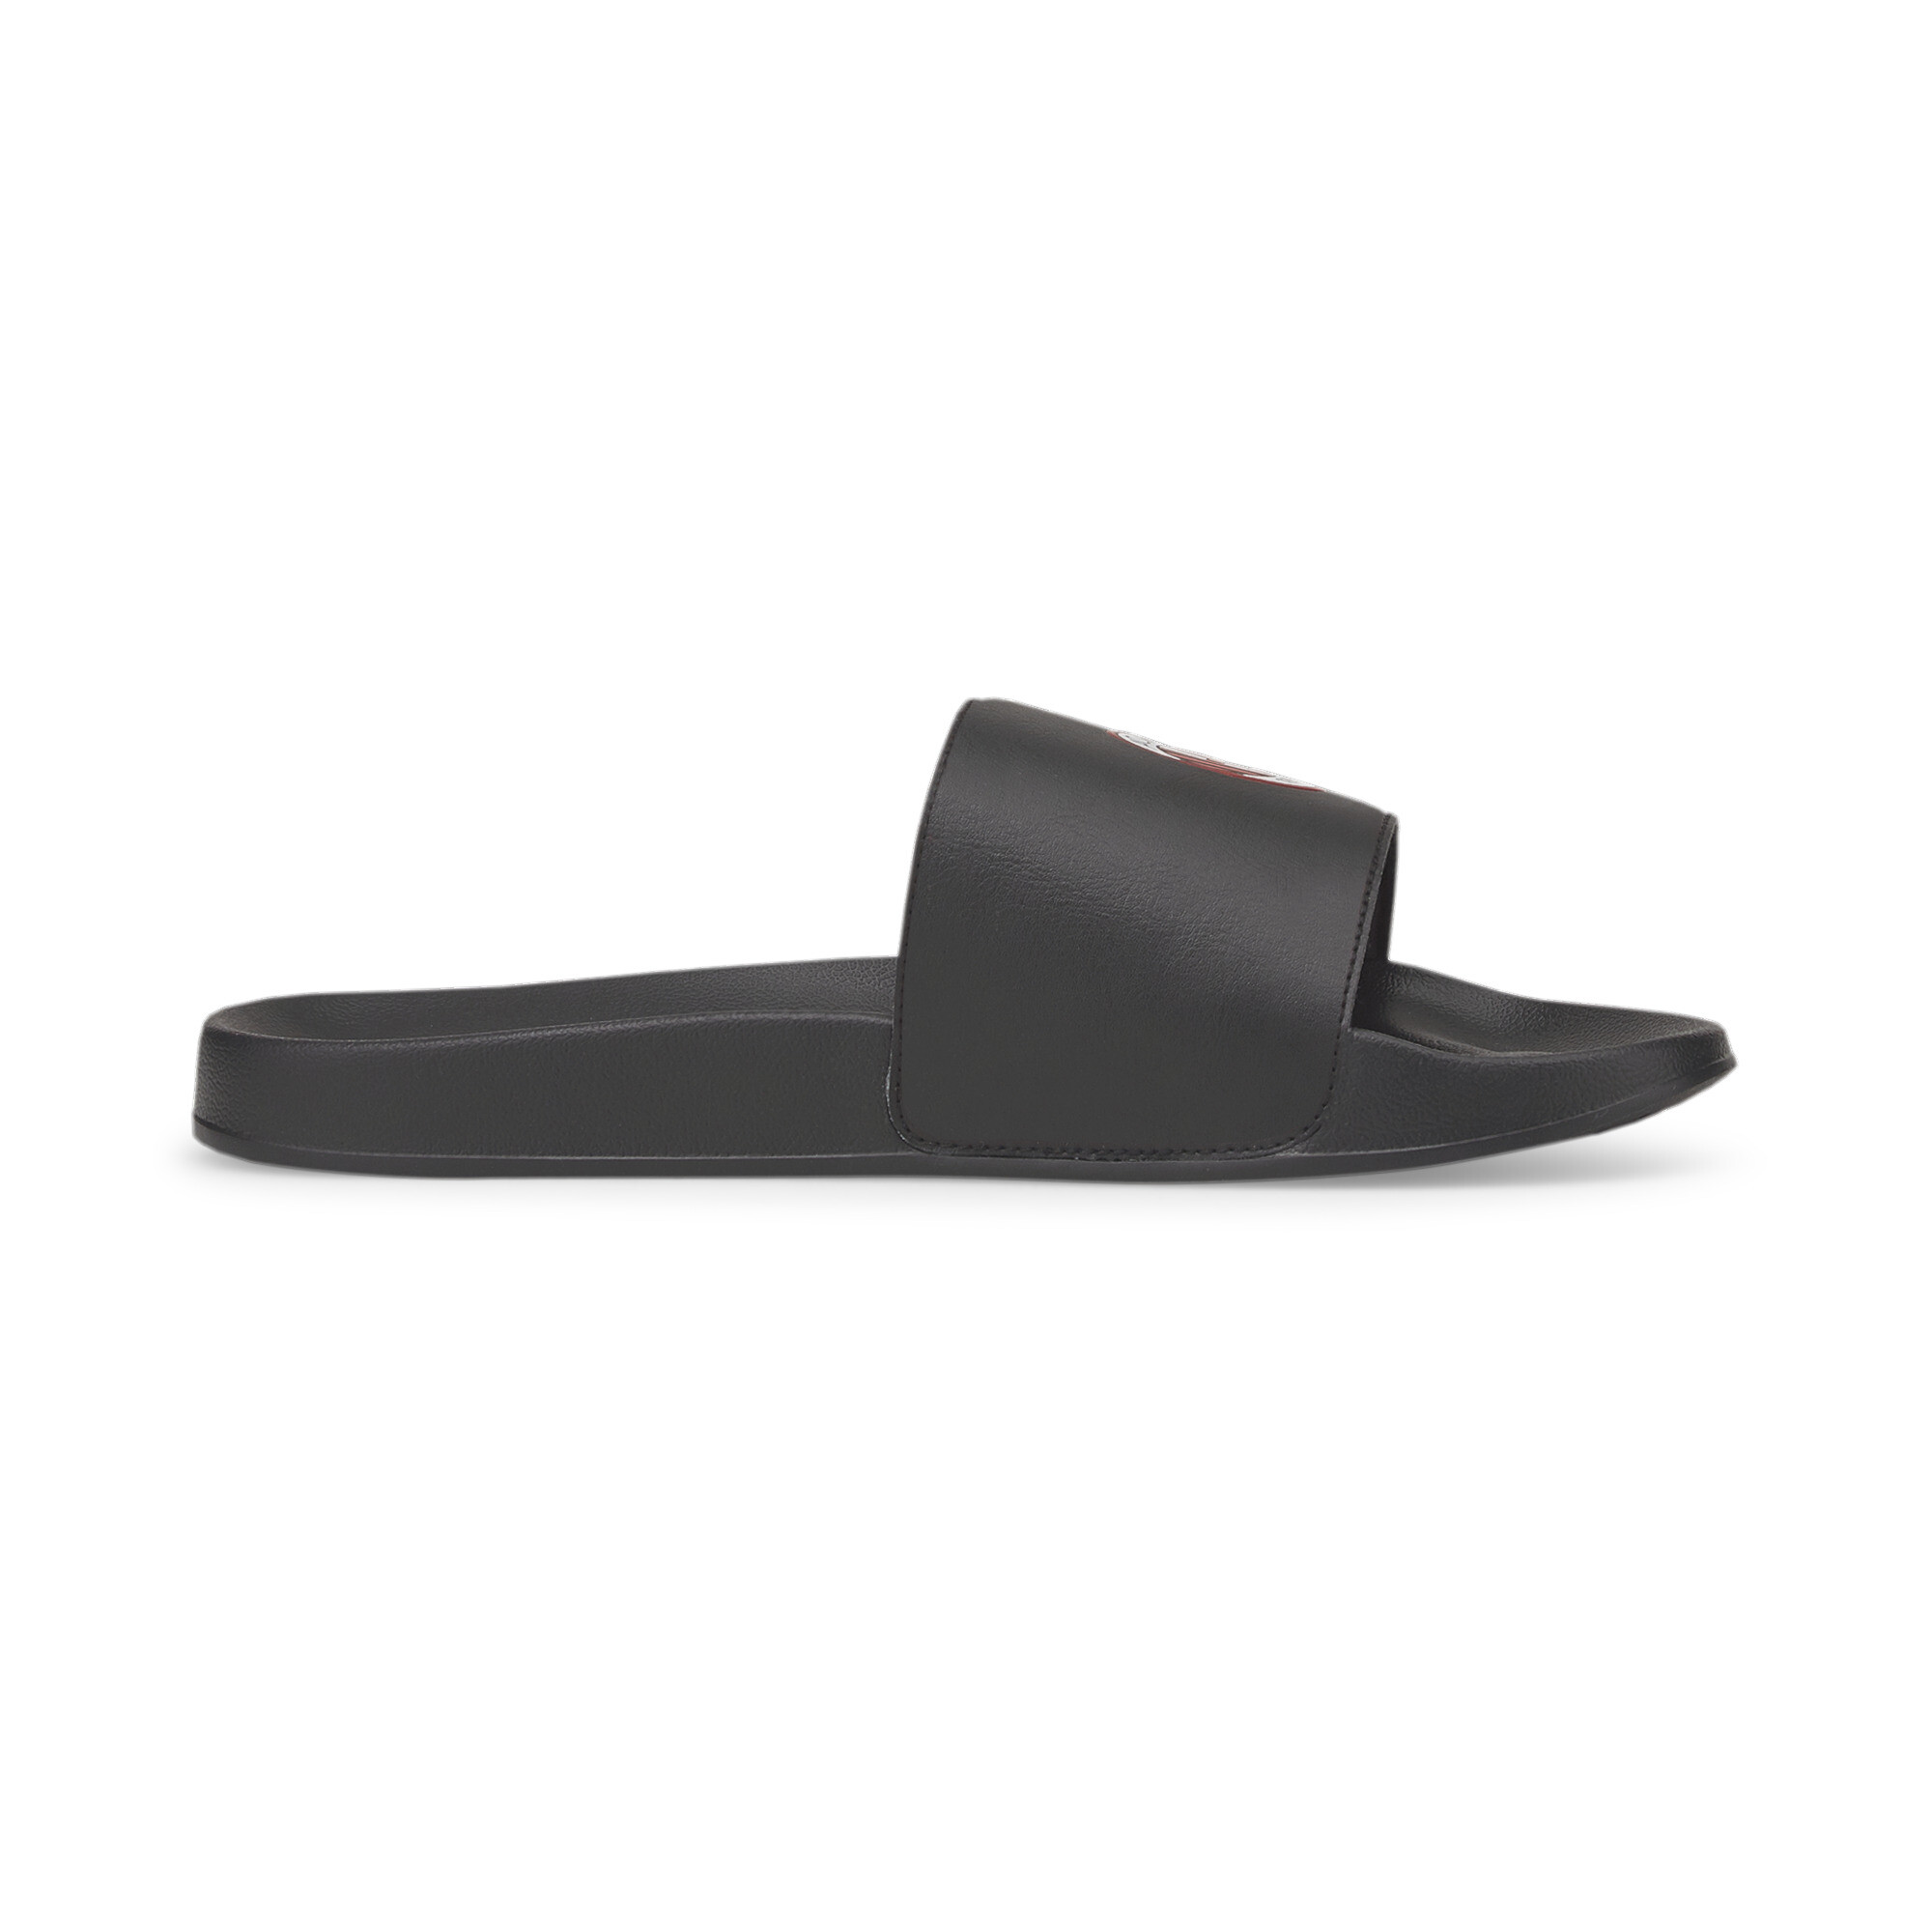 Men's PUMA ACM Leadcat 2.0 Sandals In Black, Size EU 38